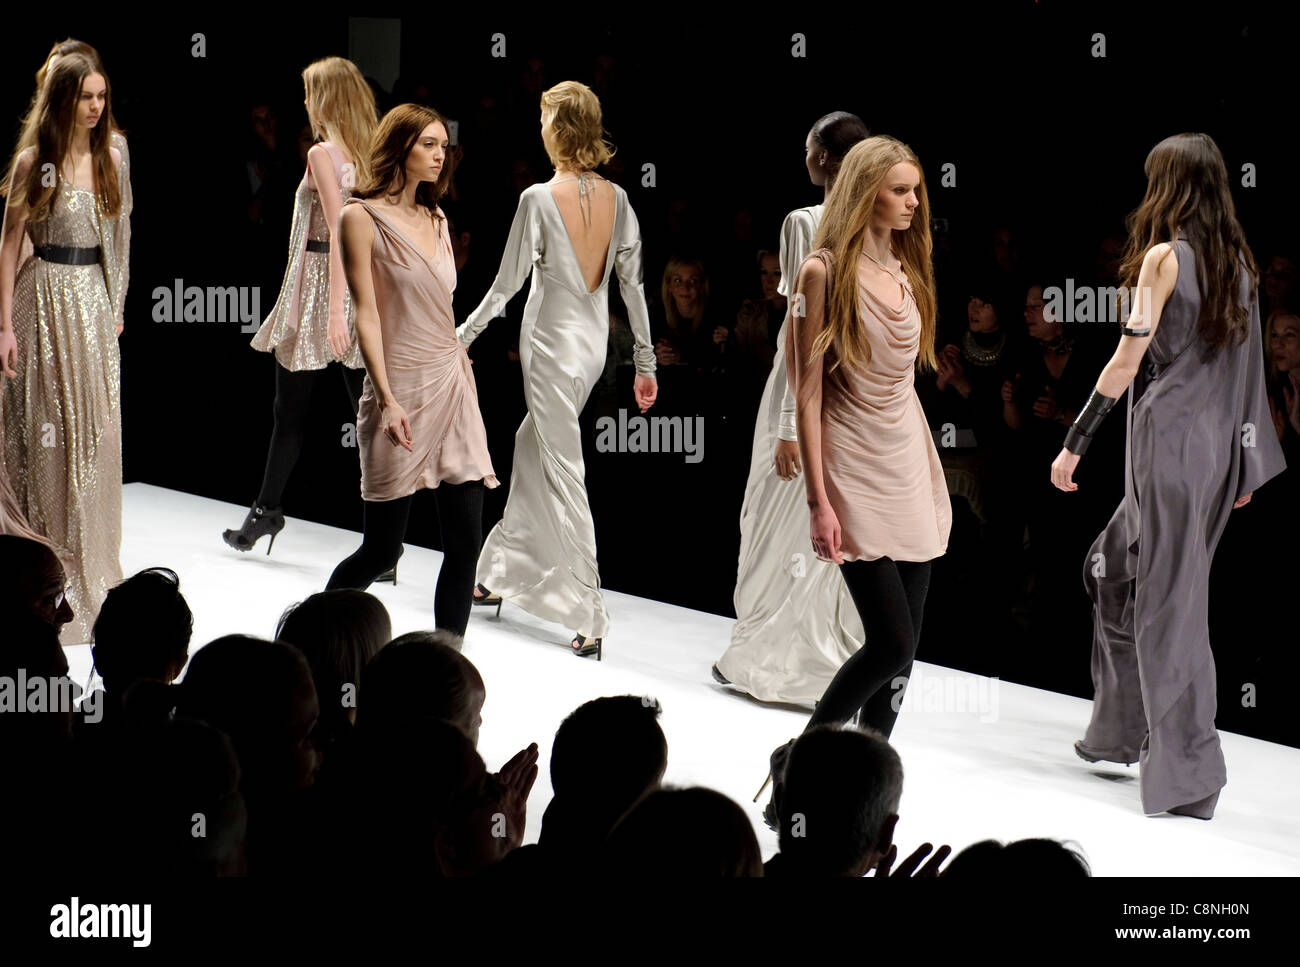 Un modèle marche dans l'Amanda Wakeley London fashion week show, Londres, 23 février 2010. Banque D'Images